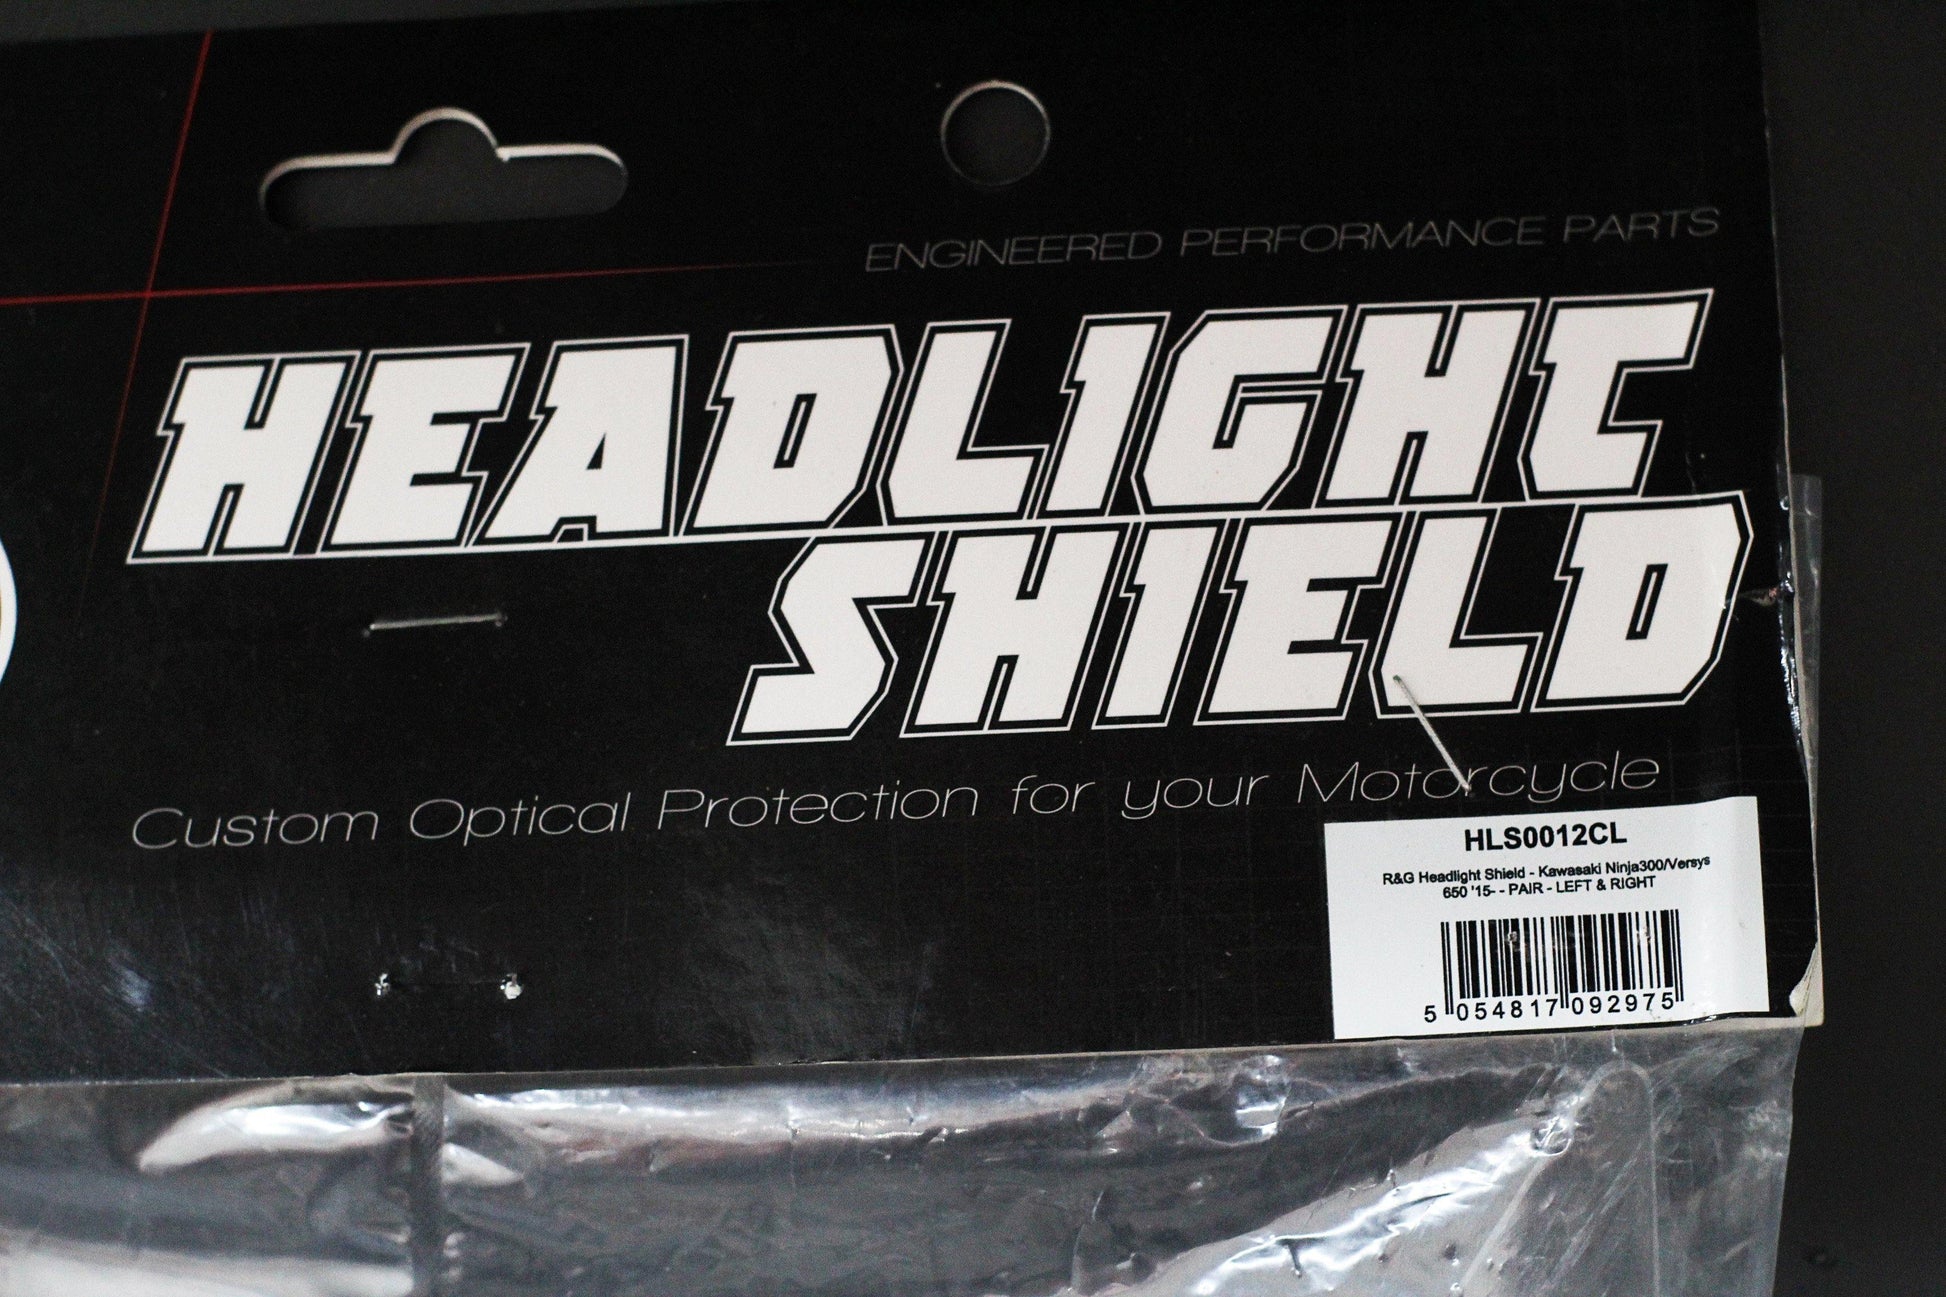 R&G Headlight Shields fits for Kawasaki Ninja 300 / Versys 650 ('15-) - Durian Bikers